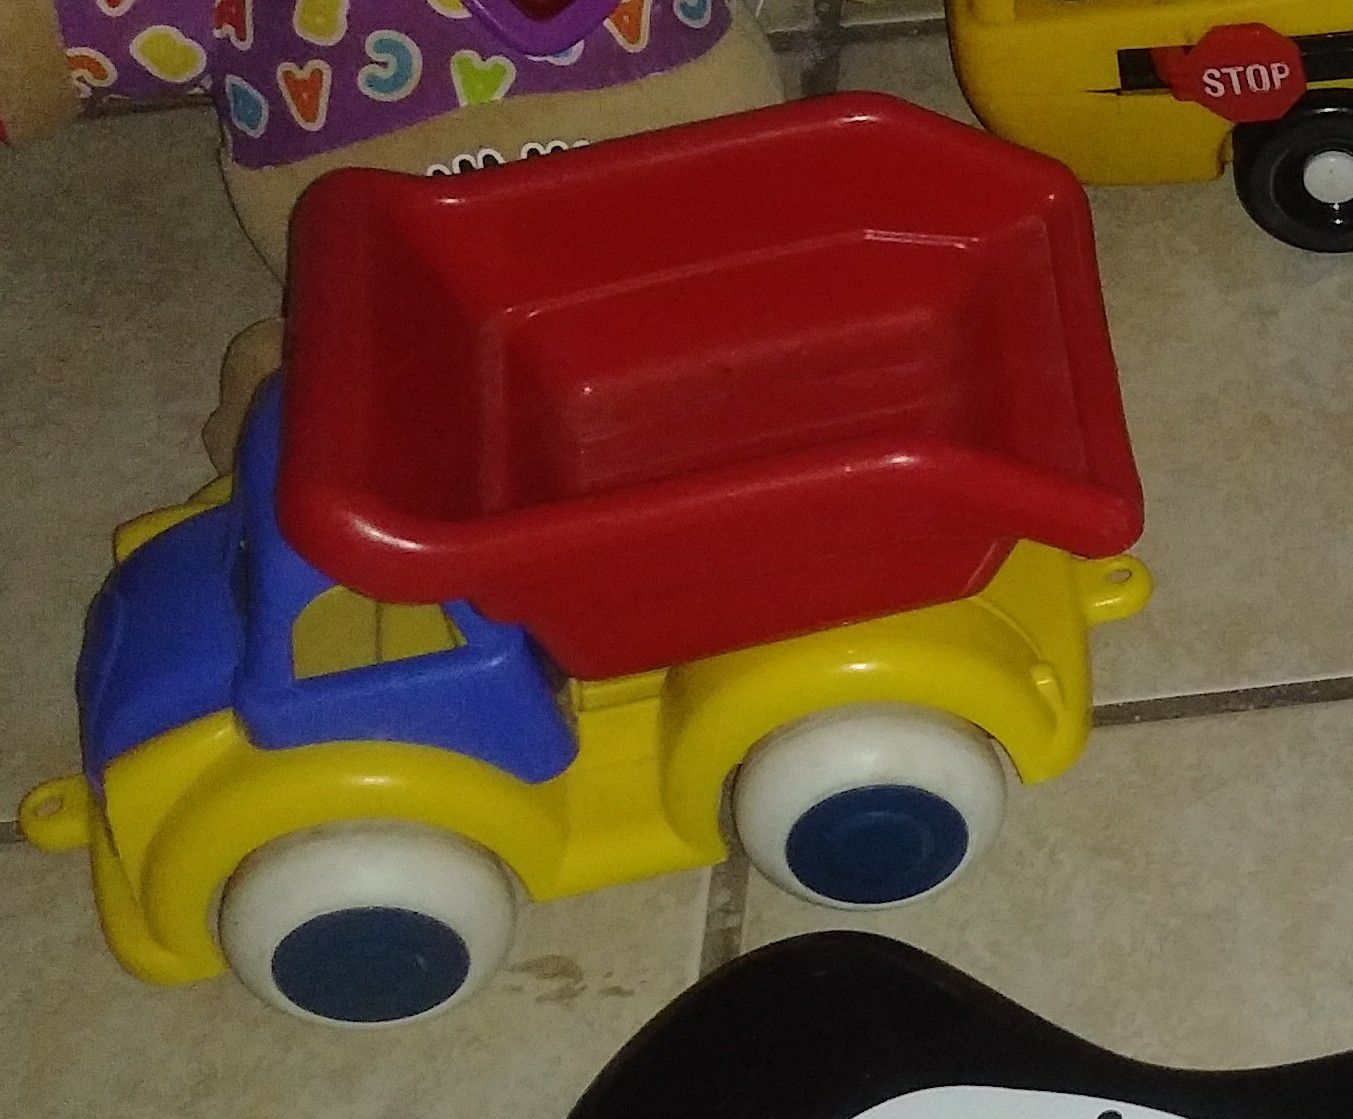 Kids' toy riding car